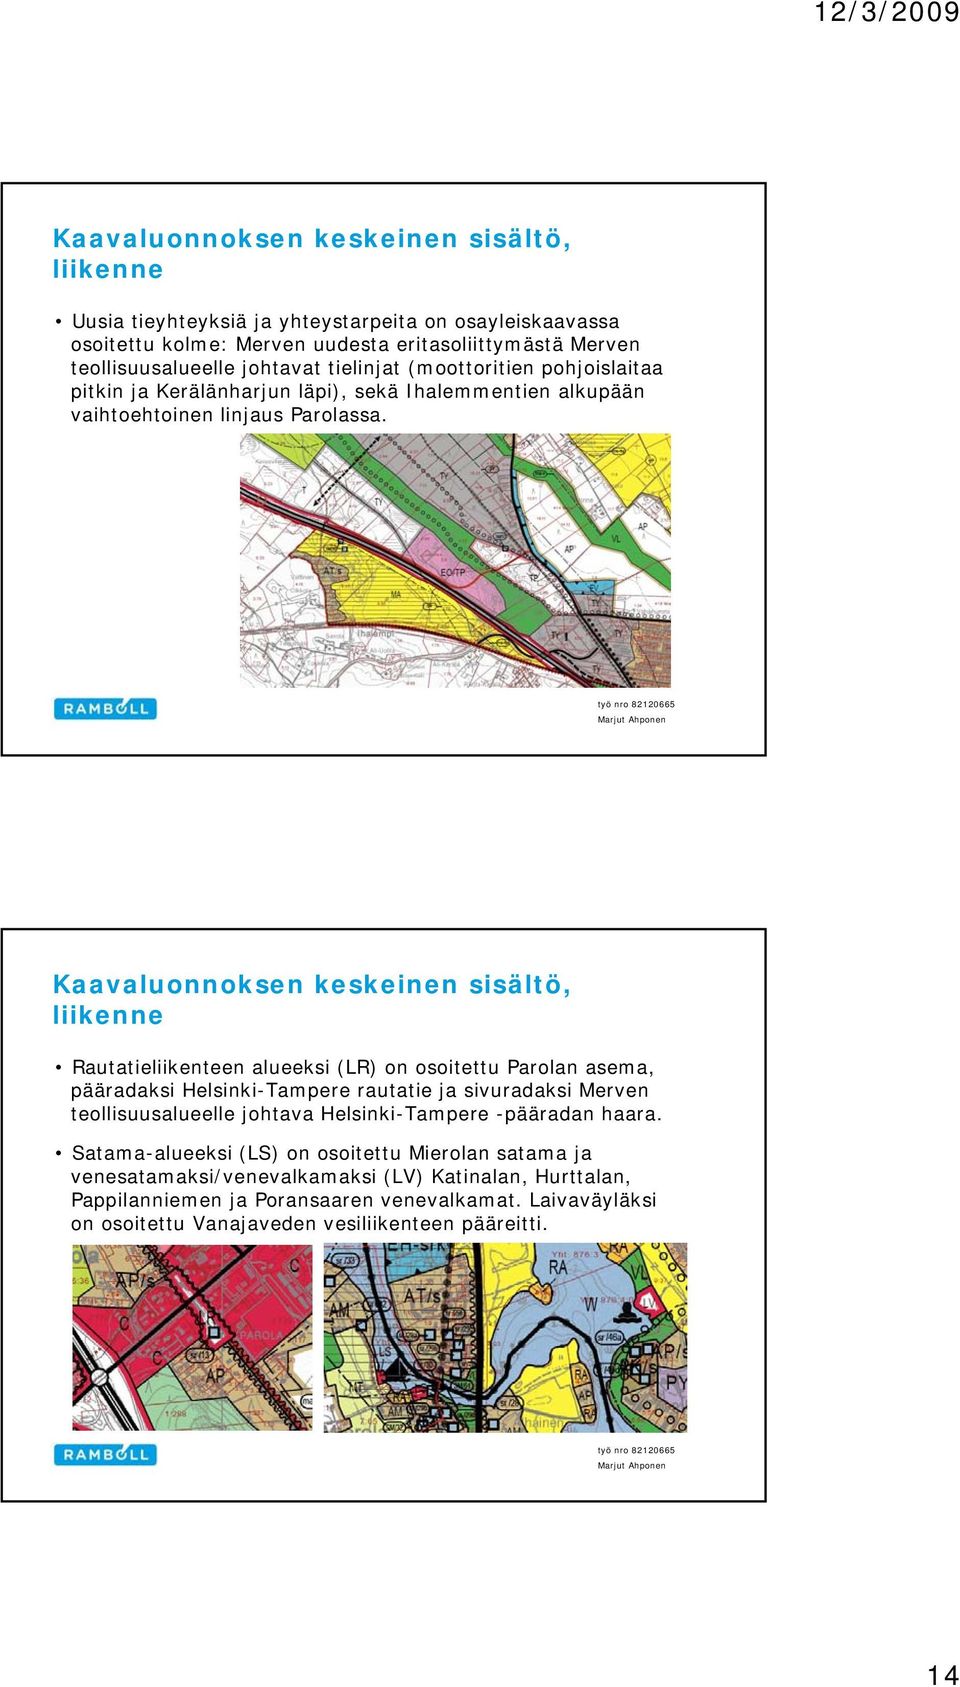 liikenne Rautatieliikenteen alueeksi (LR) on osoitettu Parolan asema, pääradaksi Helsinki-Tampere rautatie ja sivuradaksi Merven teollisuusalueelle johtava Helsinki-Tampere